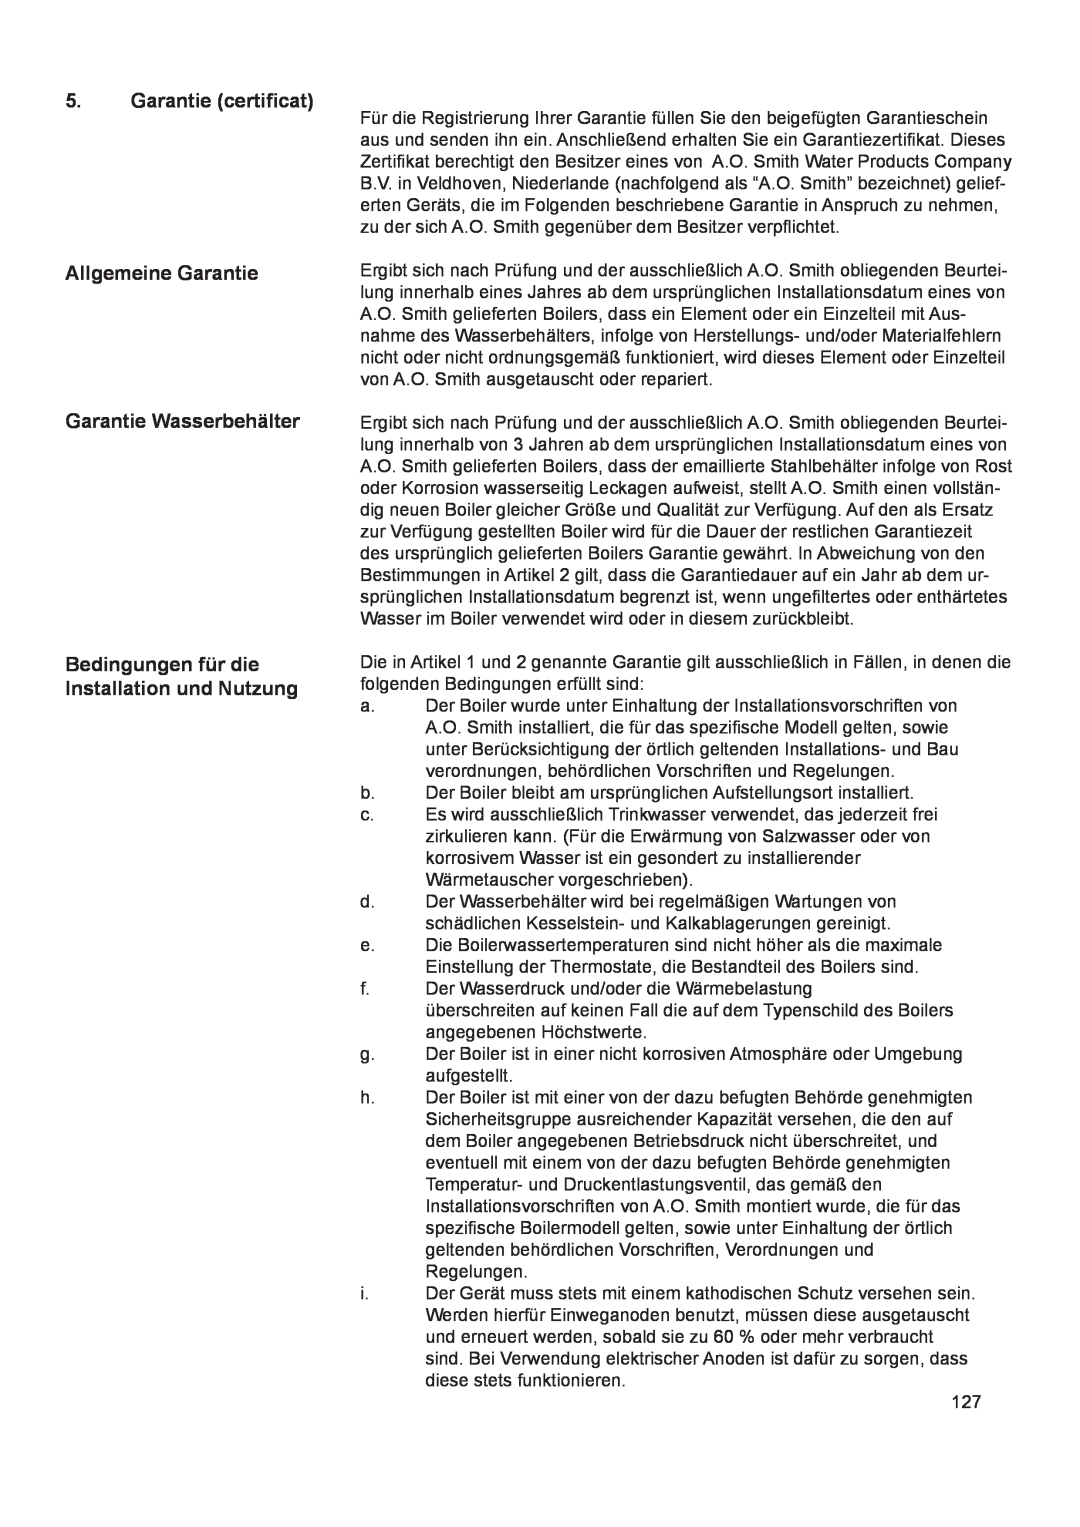 A.O. Smith 290 service manual Garantie certificat Allgemeine Garantie, Garantie Wasserbehälter 